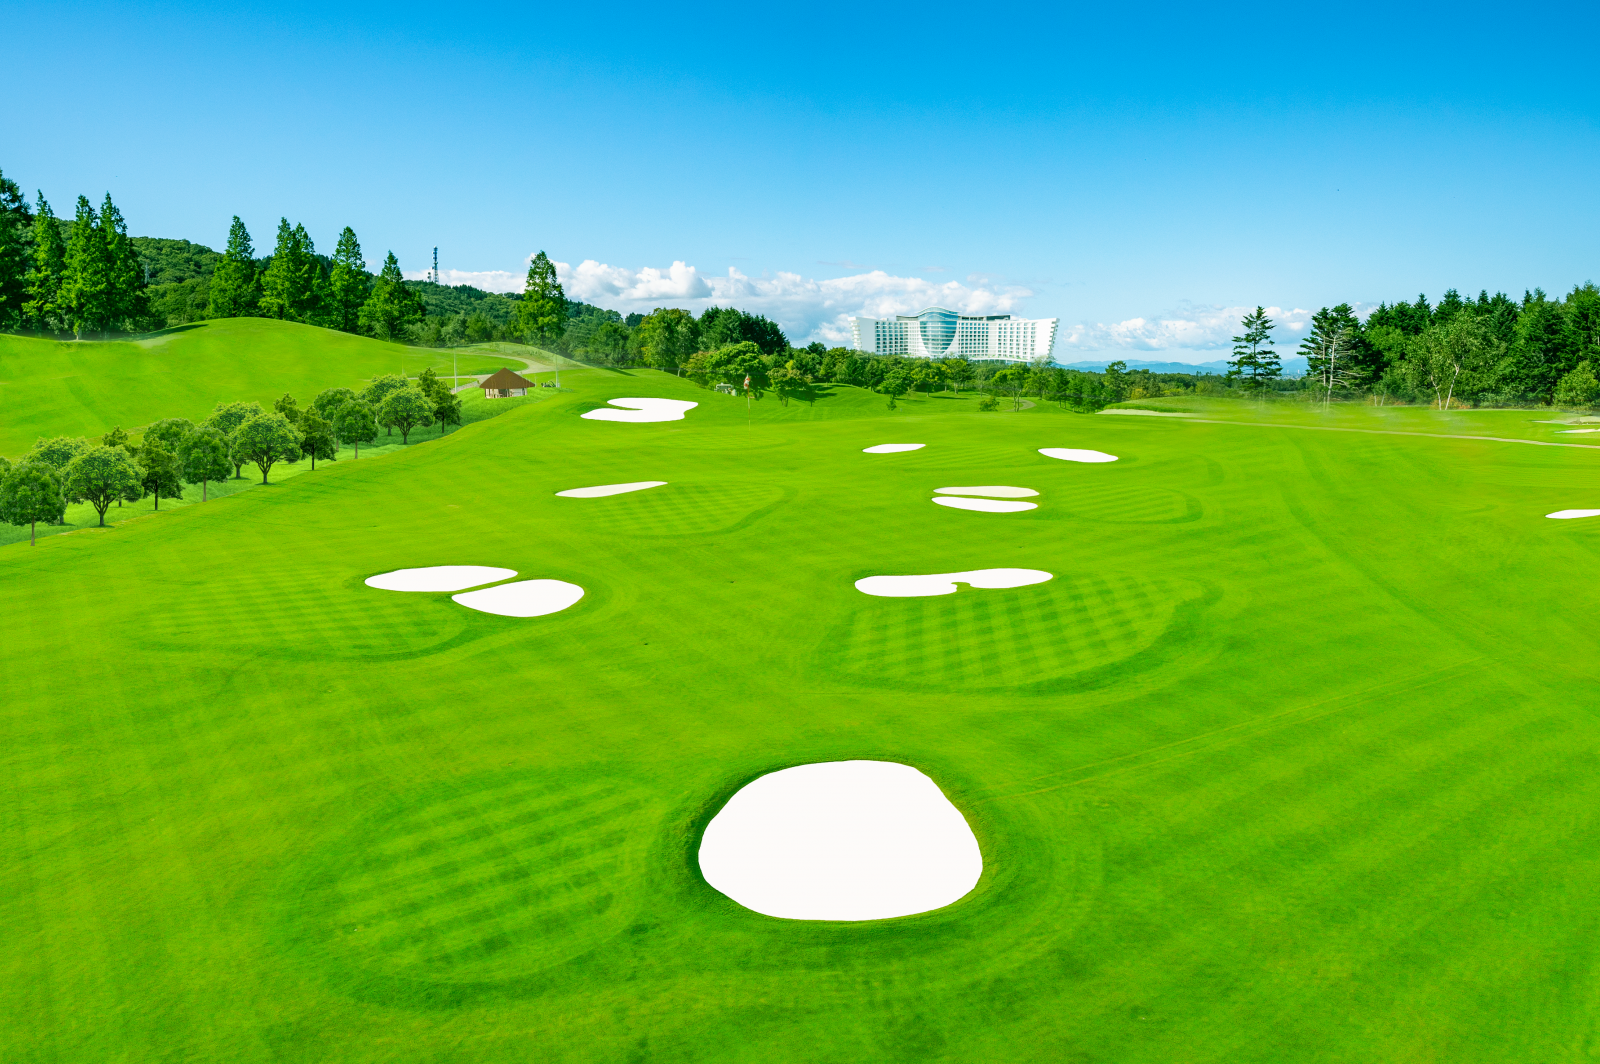 Dragon Golf Links - sân golf 27 lỗ trên biển, thuộc dự án Khu du lịch quốc tế Đồi Rồng tại Đồ Sơn - Hải Phòng.